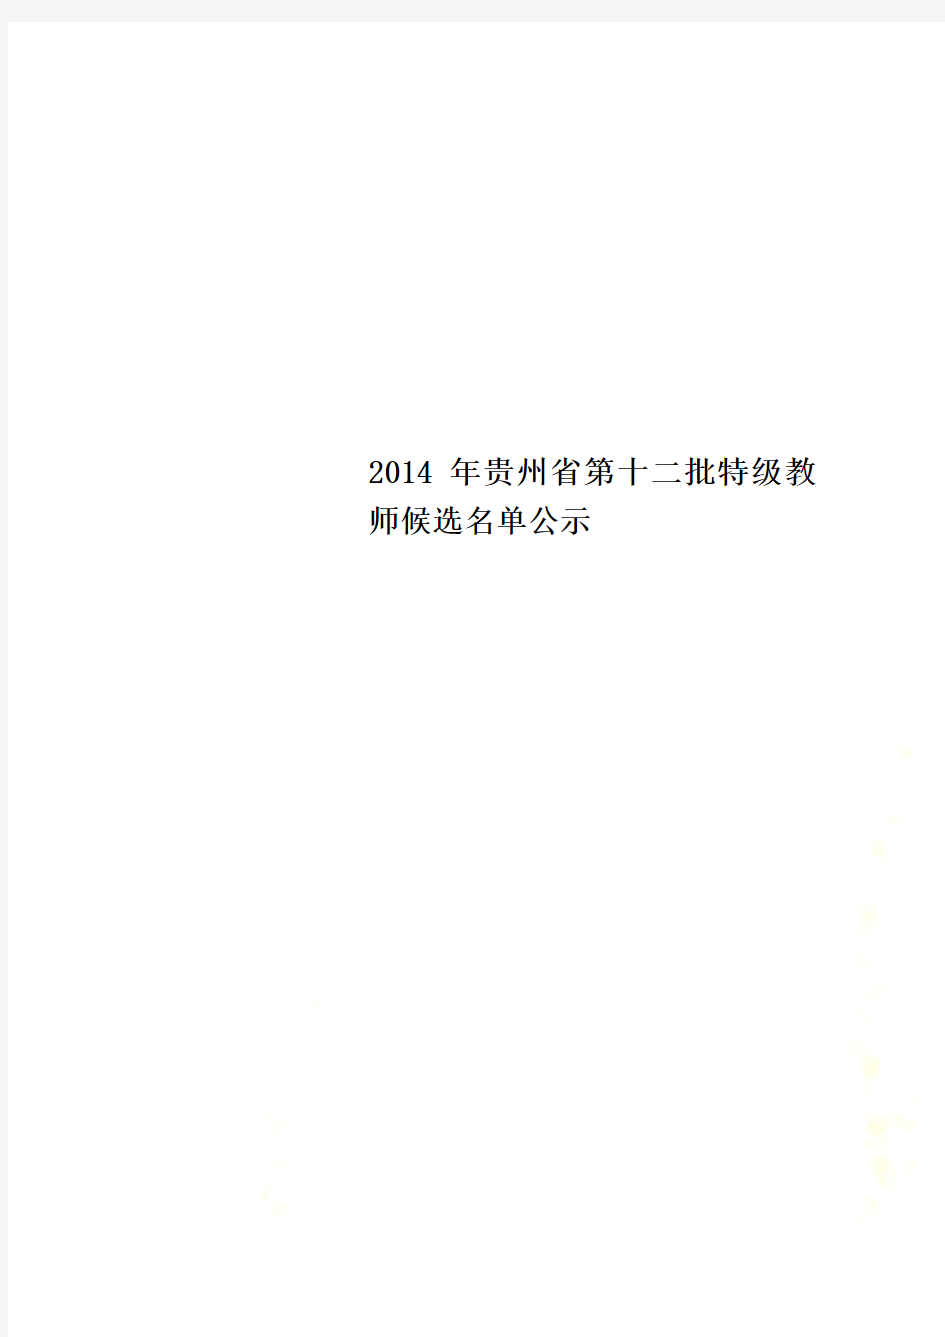 2014年贵州省第十二批特级教师候选名单公示